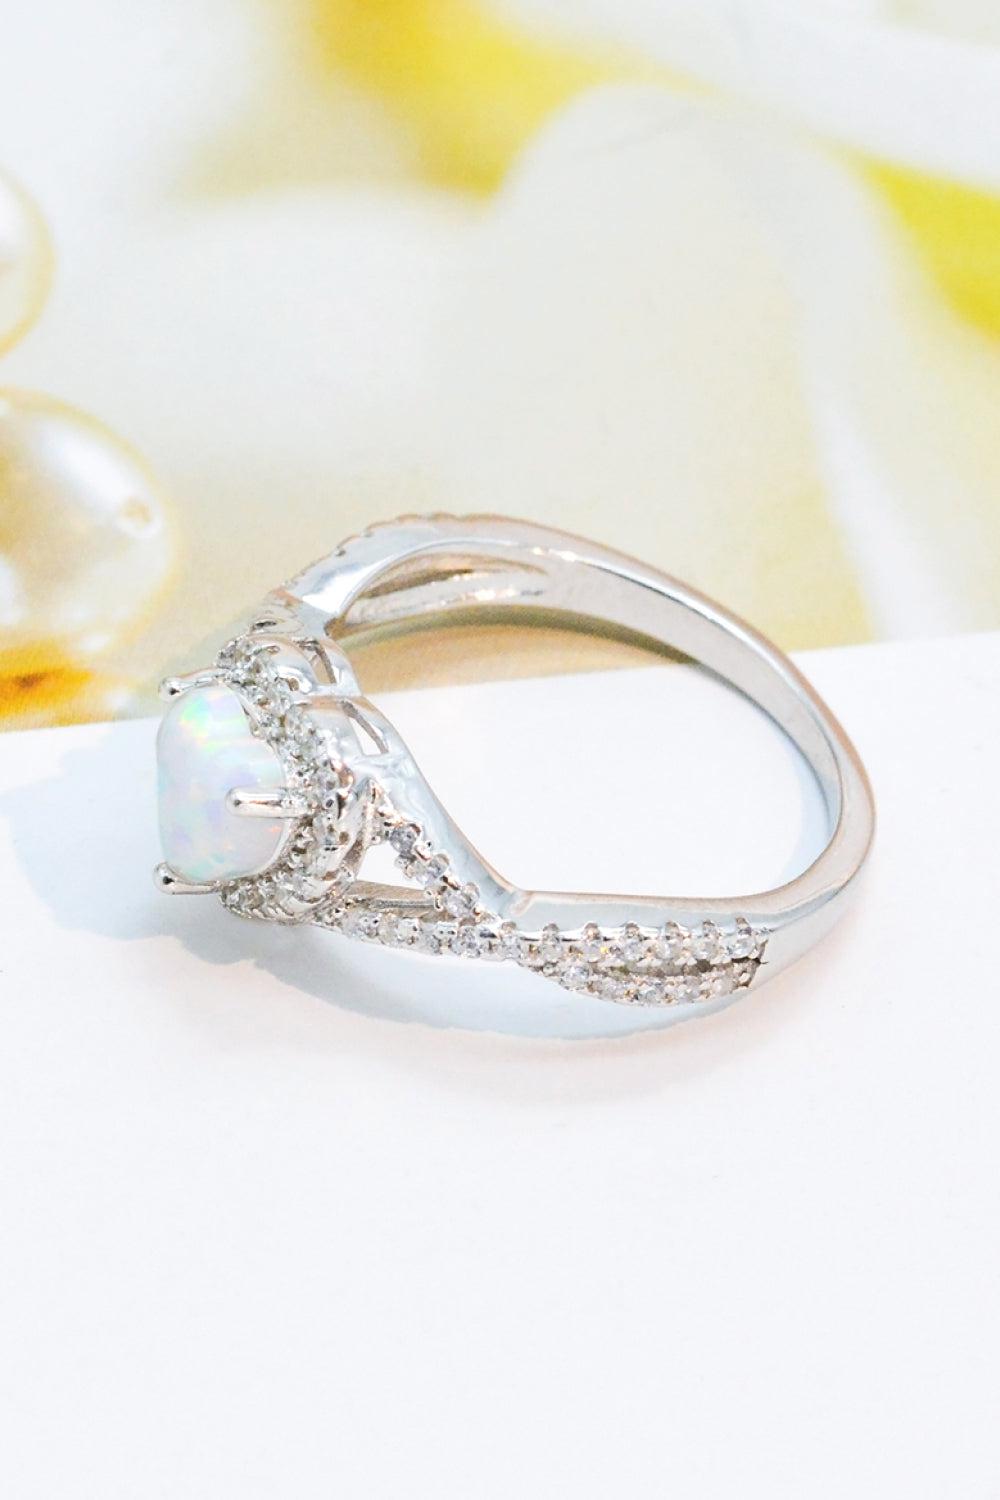 925 Sterling Silver Heart Opal Crisscross Ring BLUE ZONE PLANET